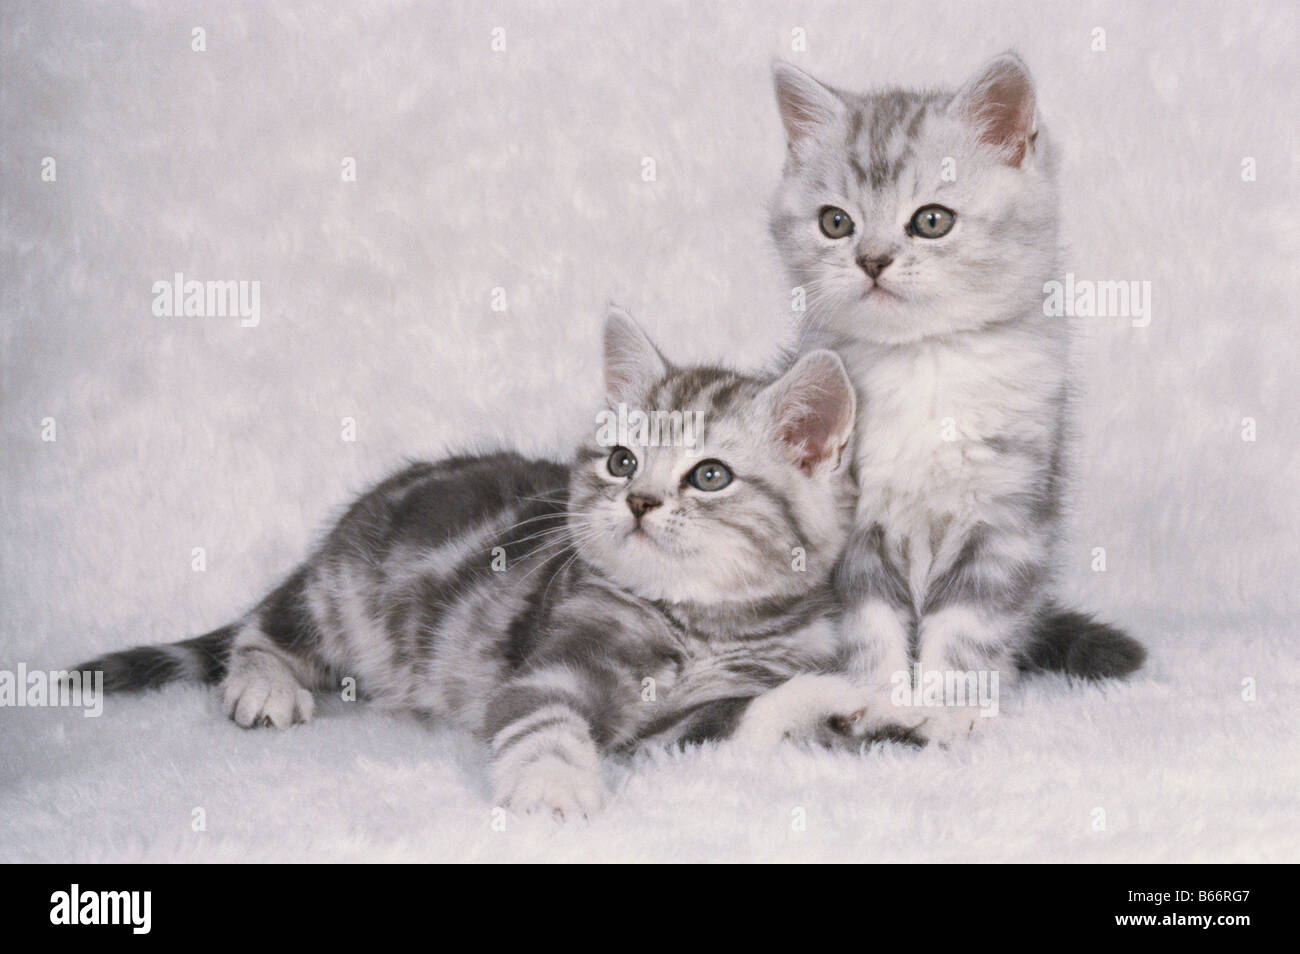 Foto de estudio de dos American Shorthair gatitos Foto de stock